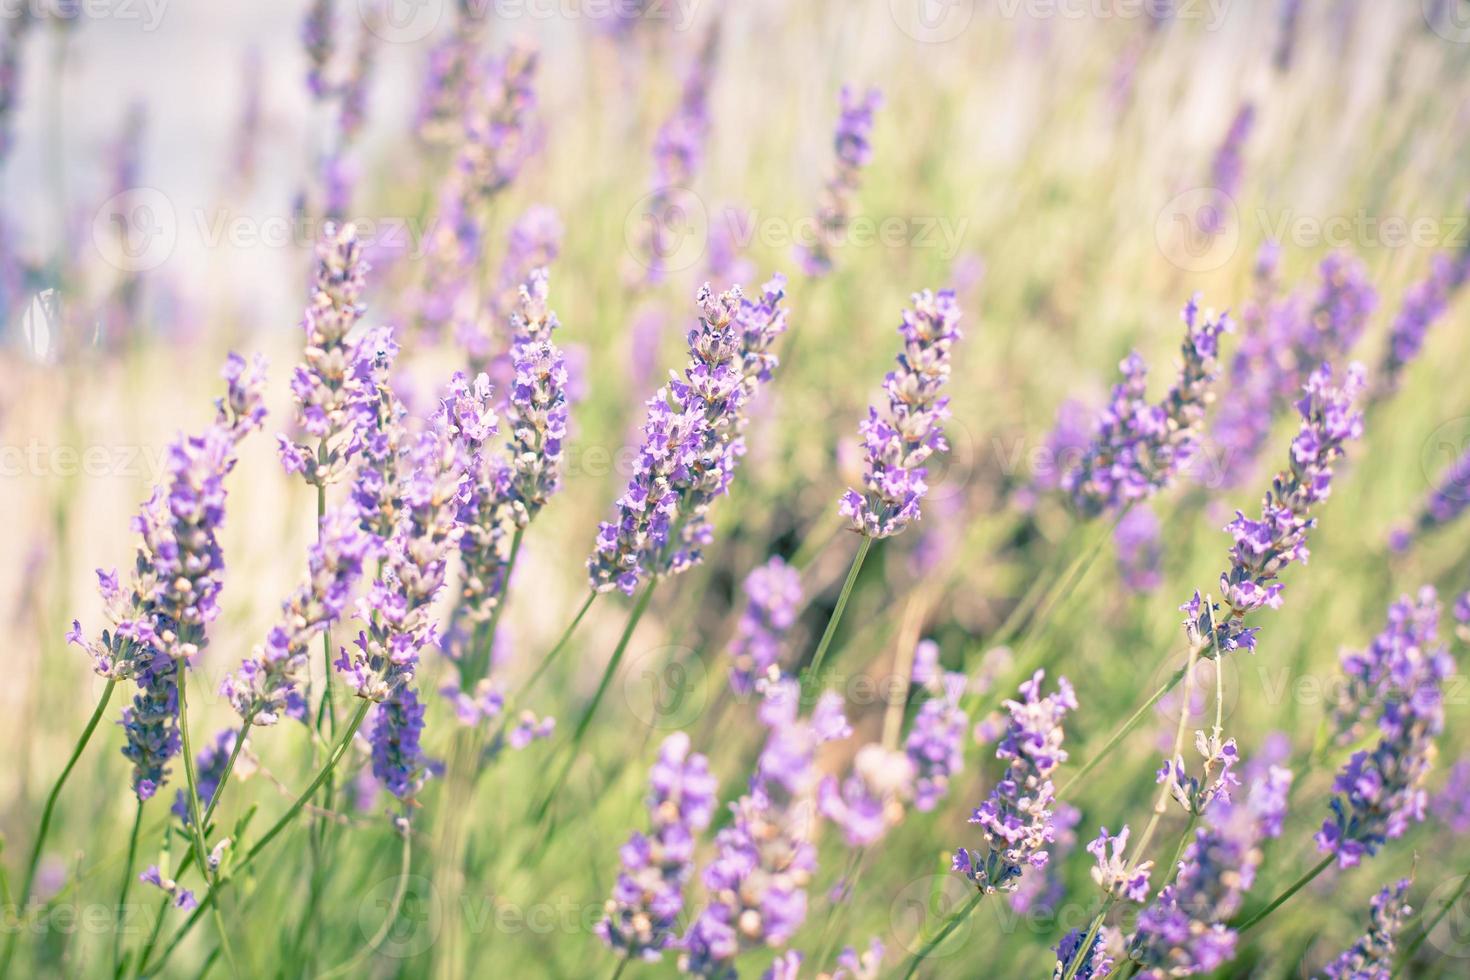 lavendel bloemen natuurlijk achtergrond foto